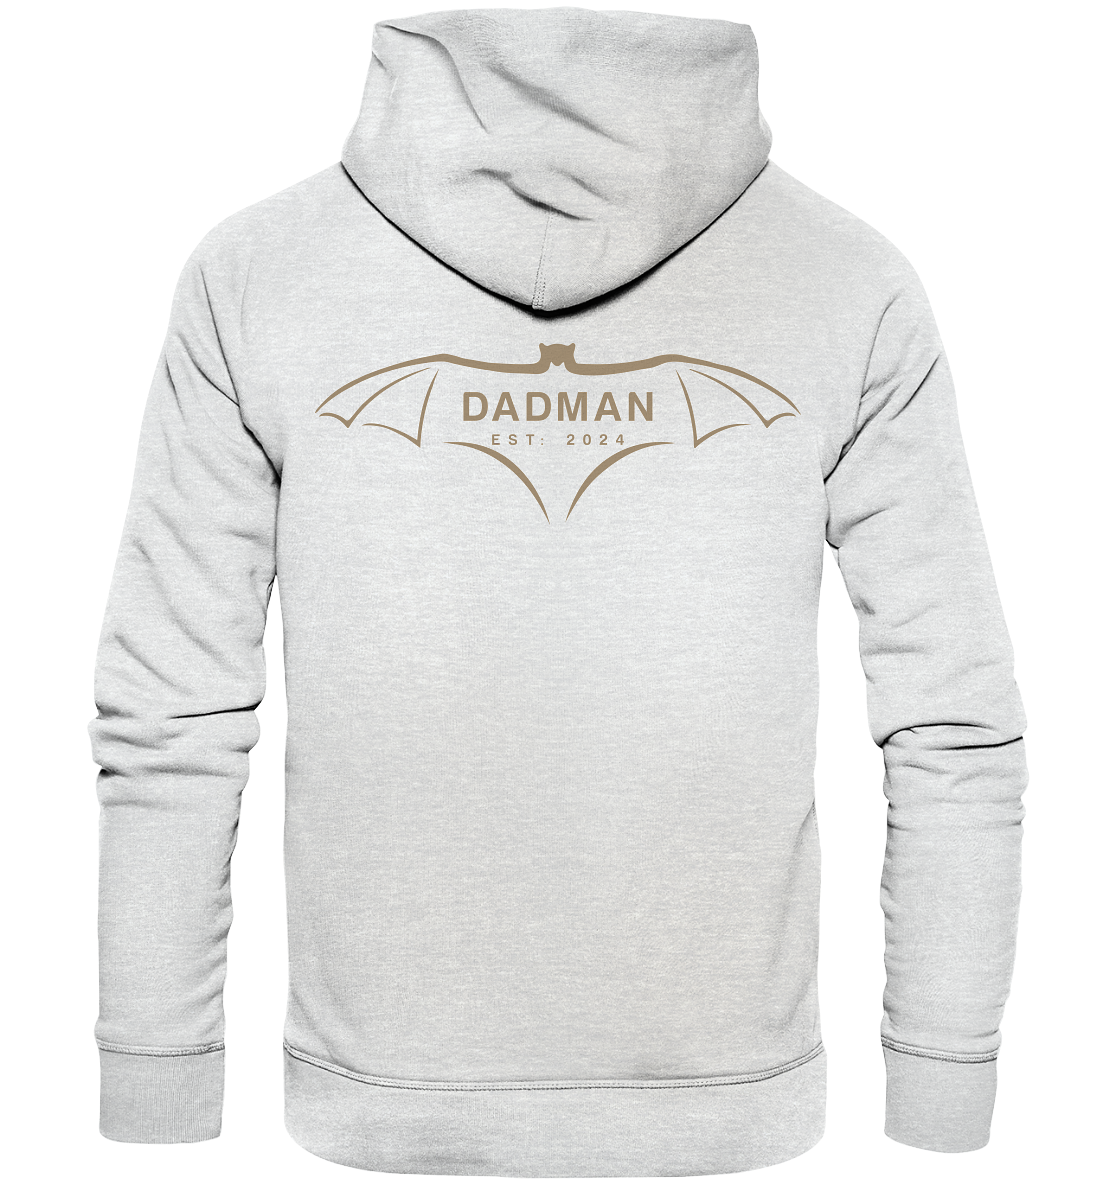 DADMAN Back Edition, dato kan tilpasses - Premium Unisex hættetrøje